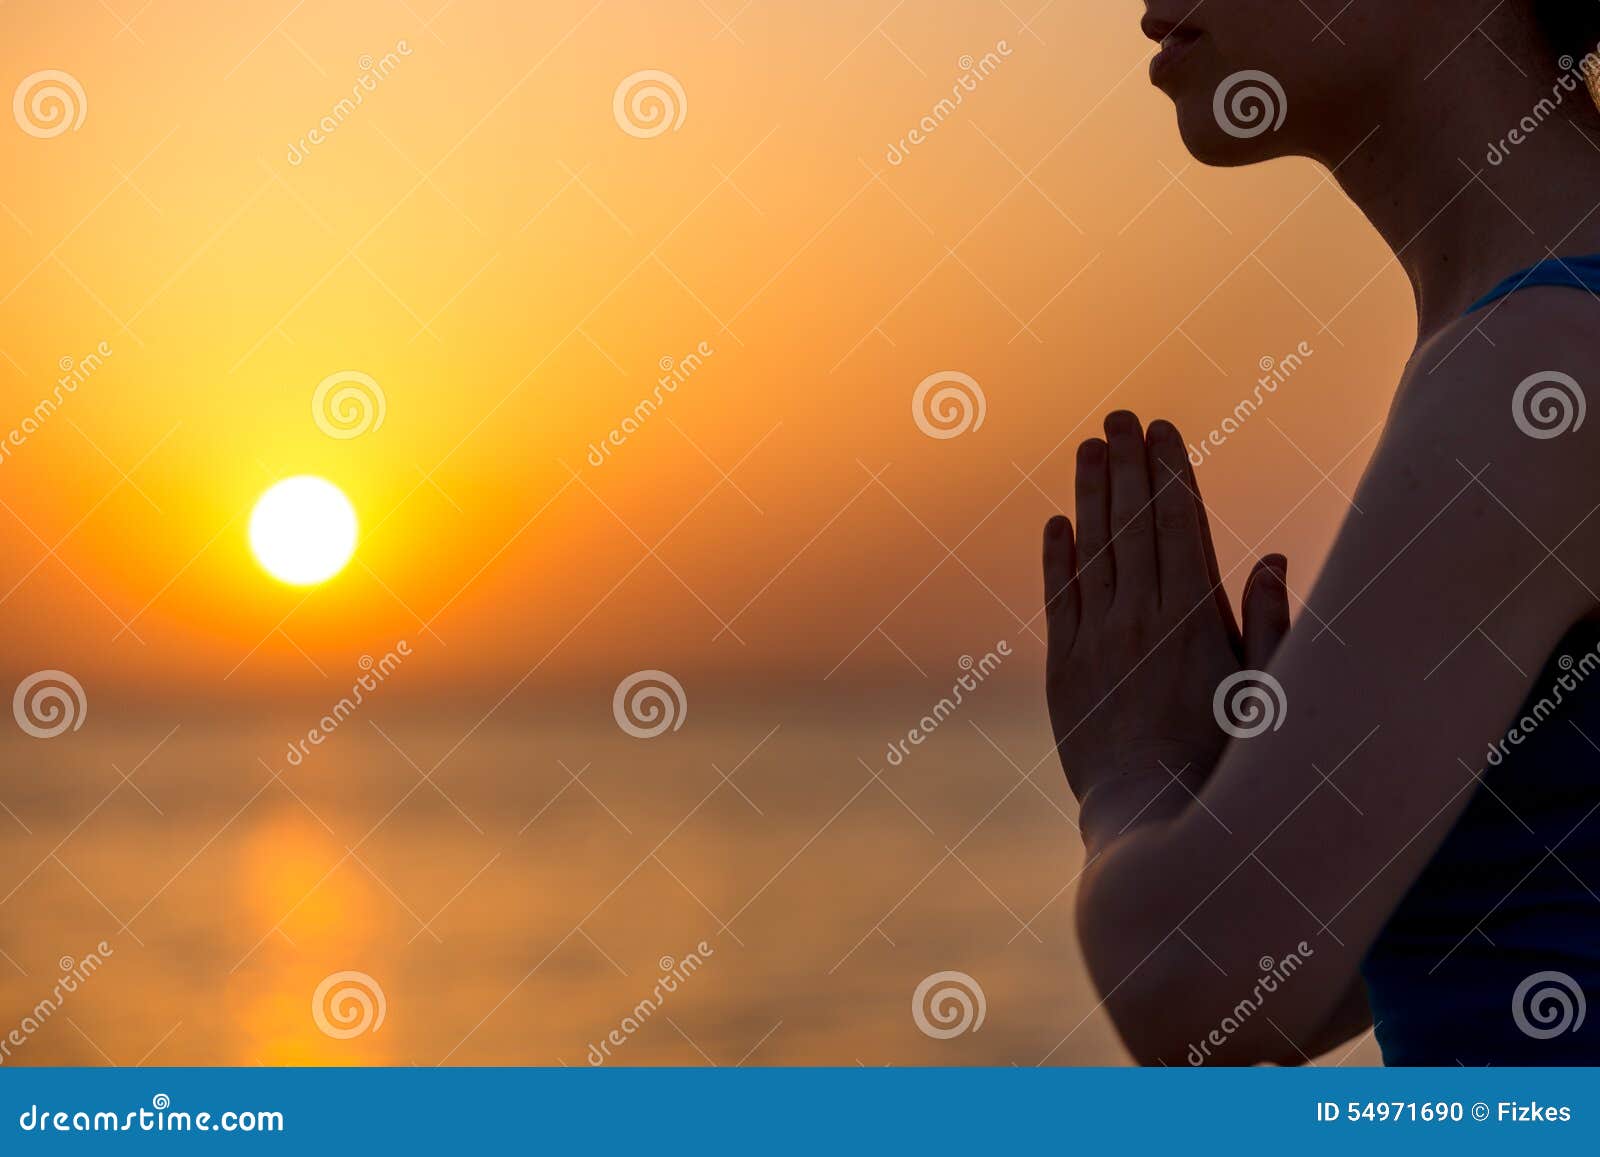 Namaste gesture stock photo. Image of asana, female, exercise - 54971690